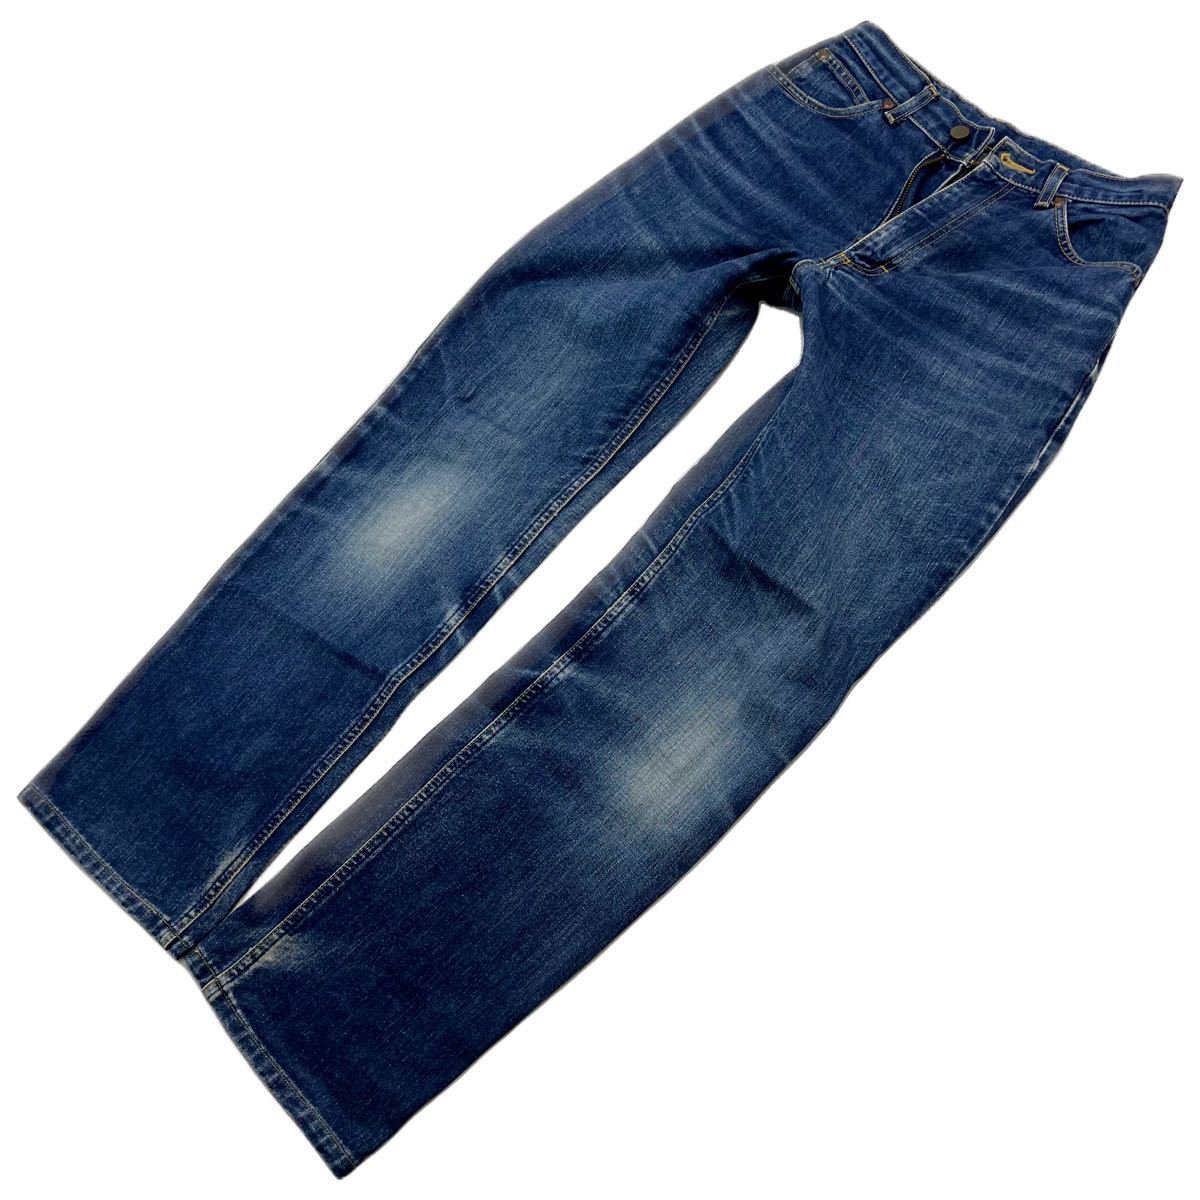 Lee * 7201 атмосфера есть цвет ..* Denim брюки индиго голубой джинсы W29 American Casual женщина Street casual б/у одежда Lee #Ja6594